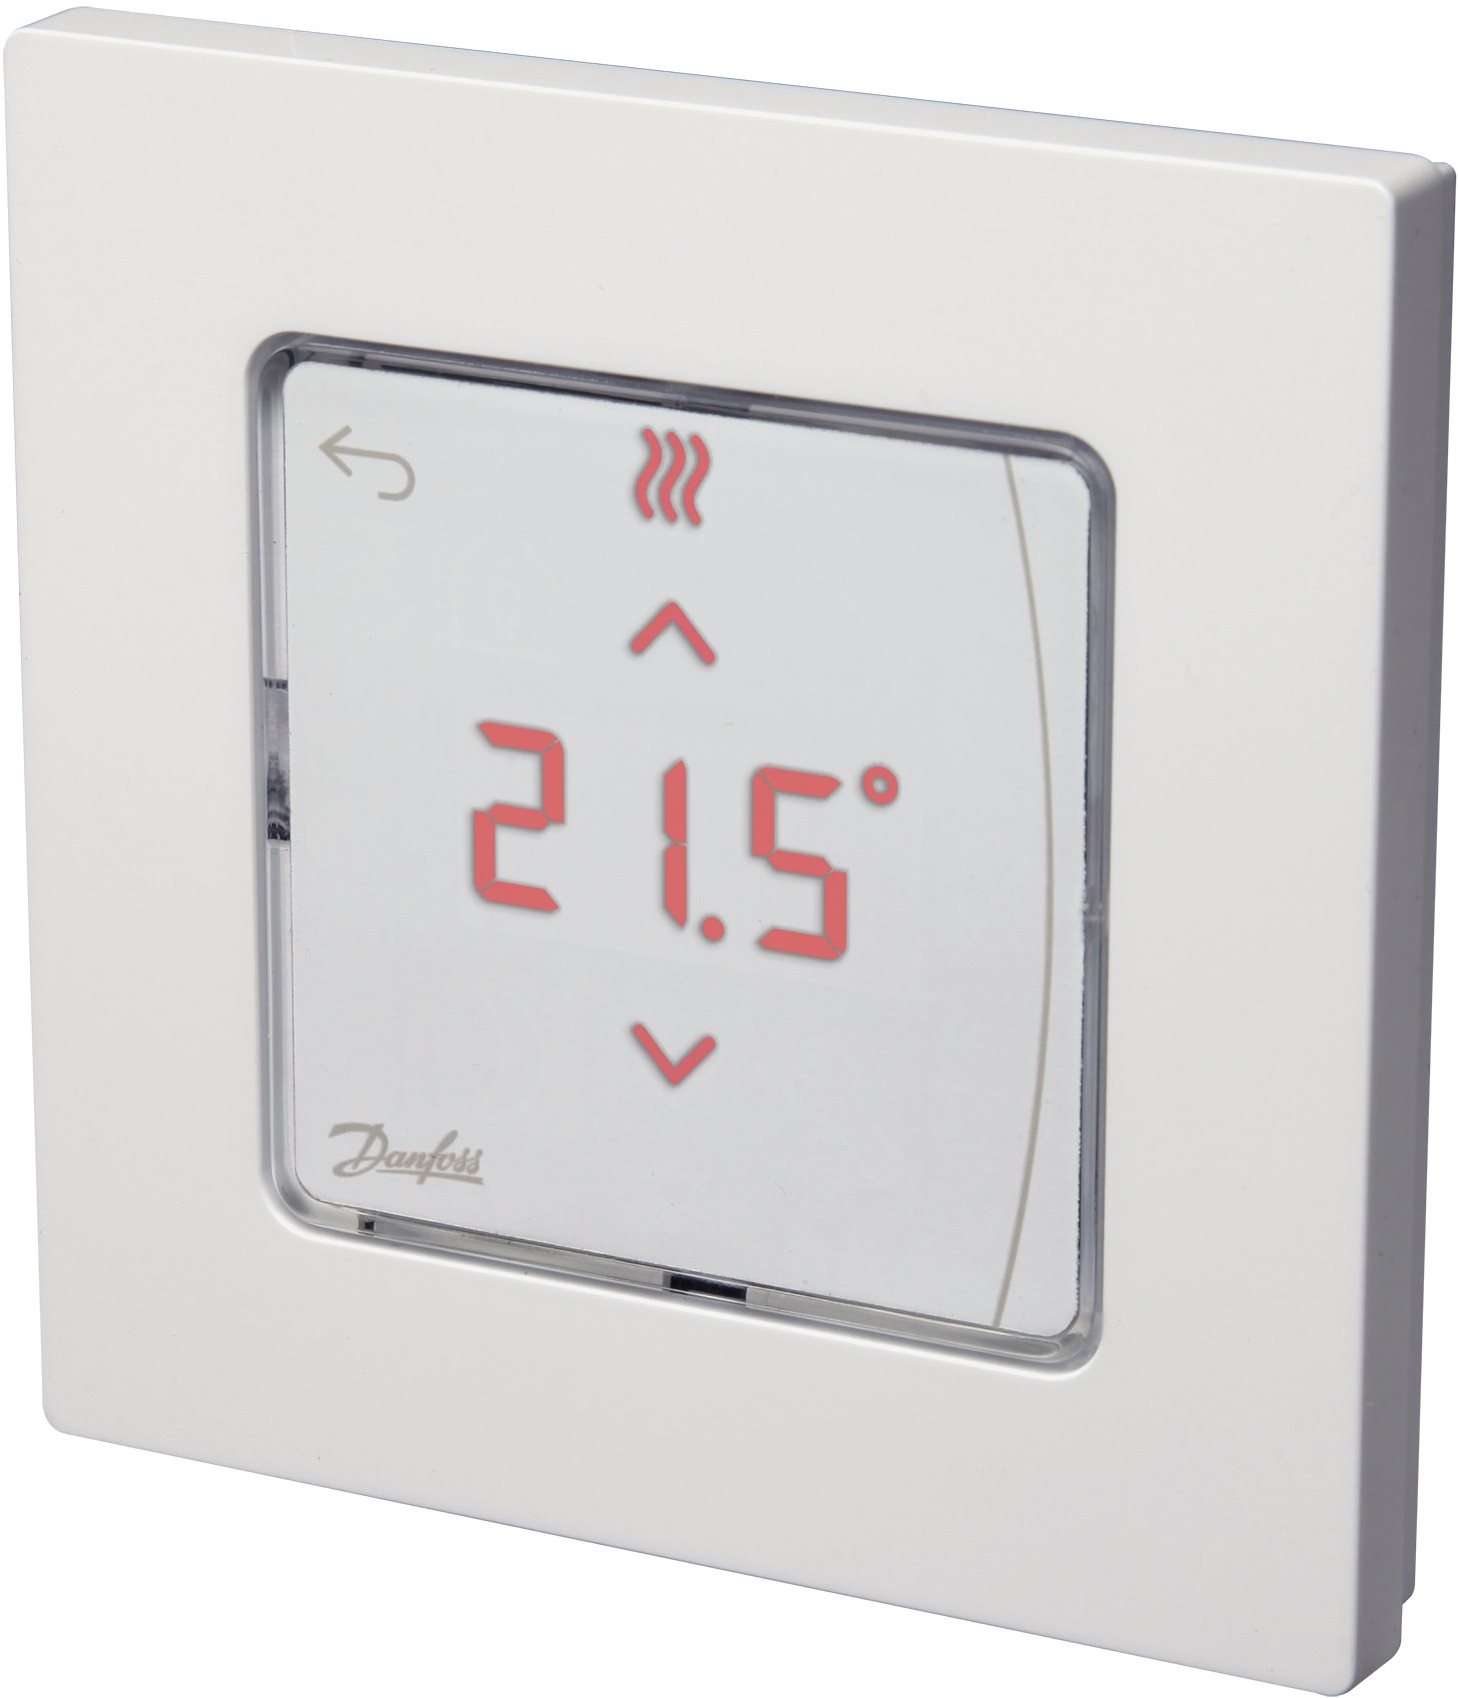 Okos termosztát Danfoss Icon padló Infra termosztát